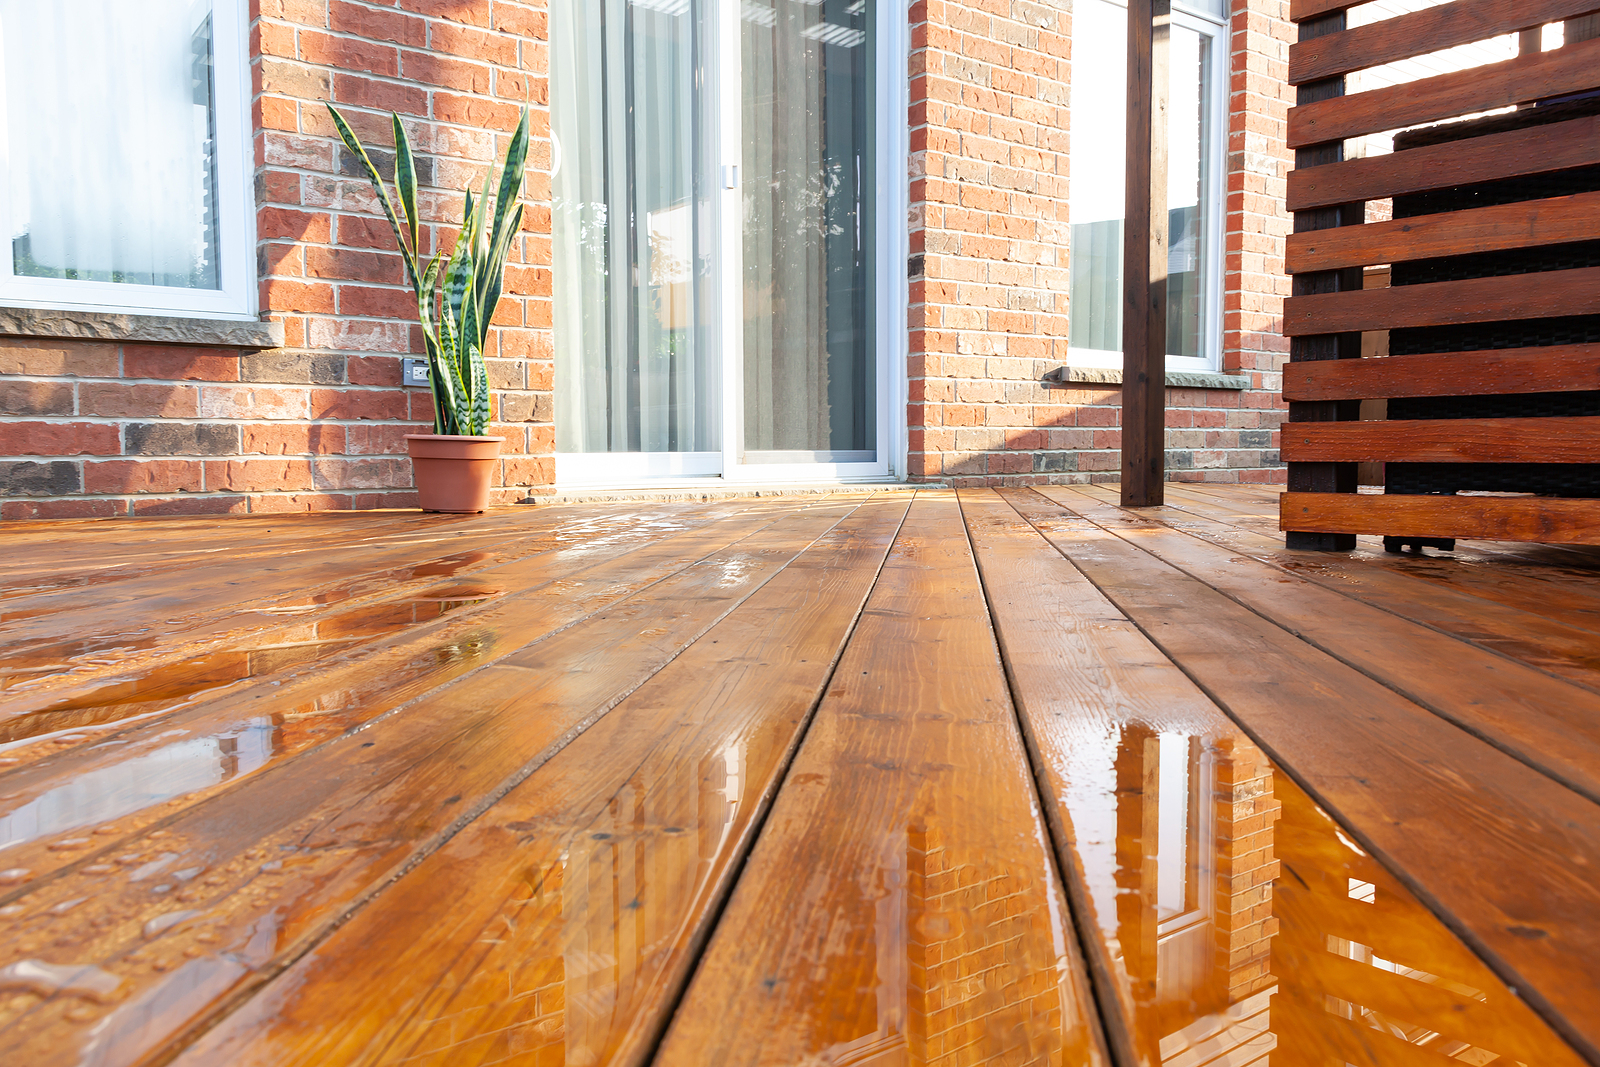 Backyard wooden deck floor